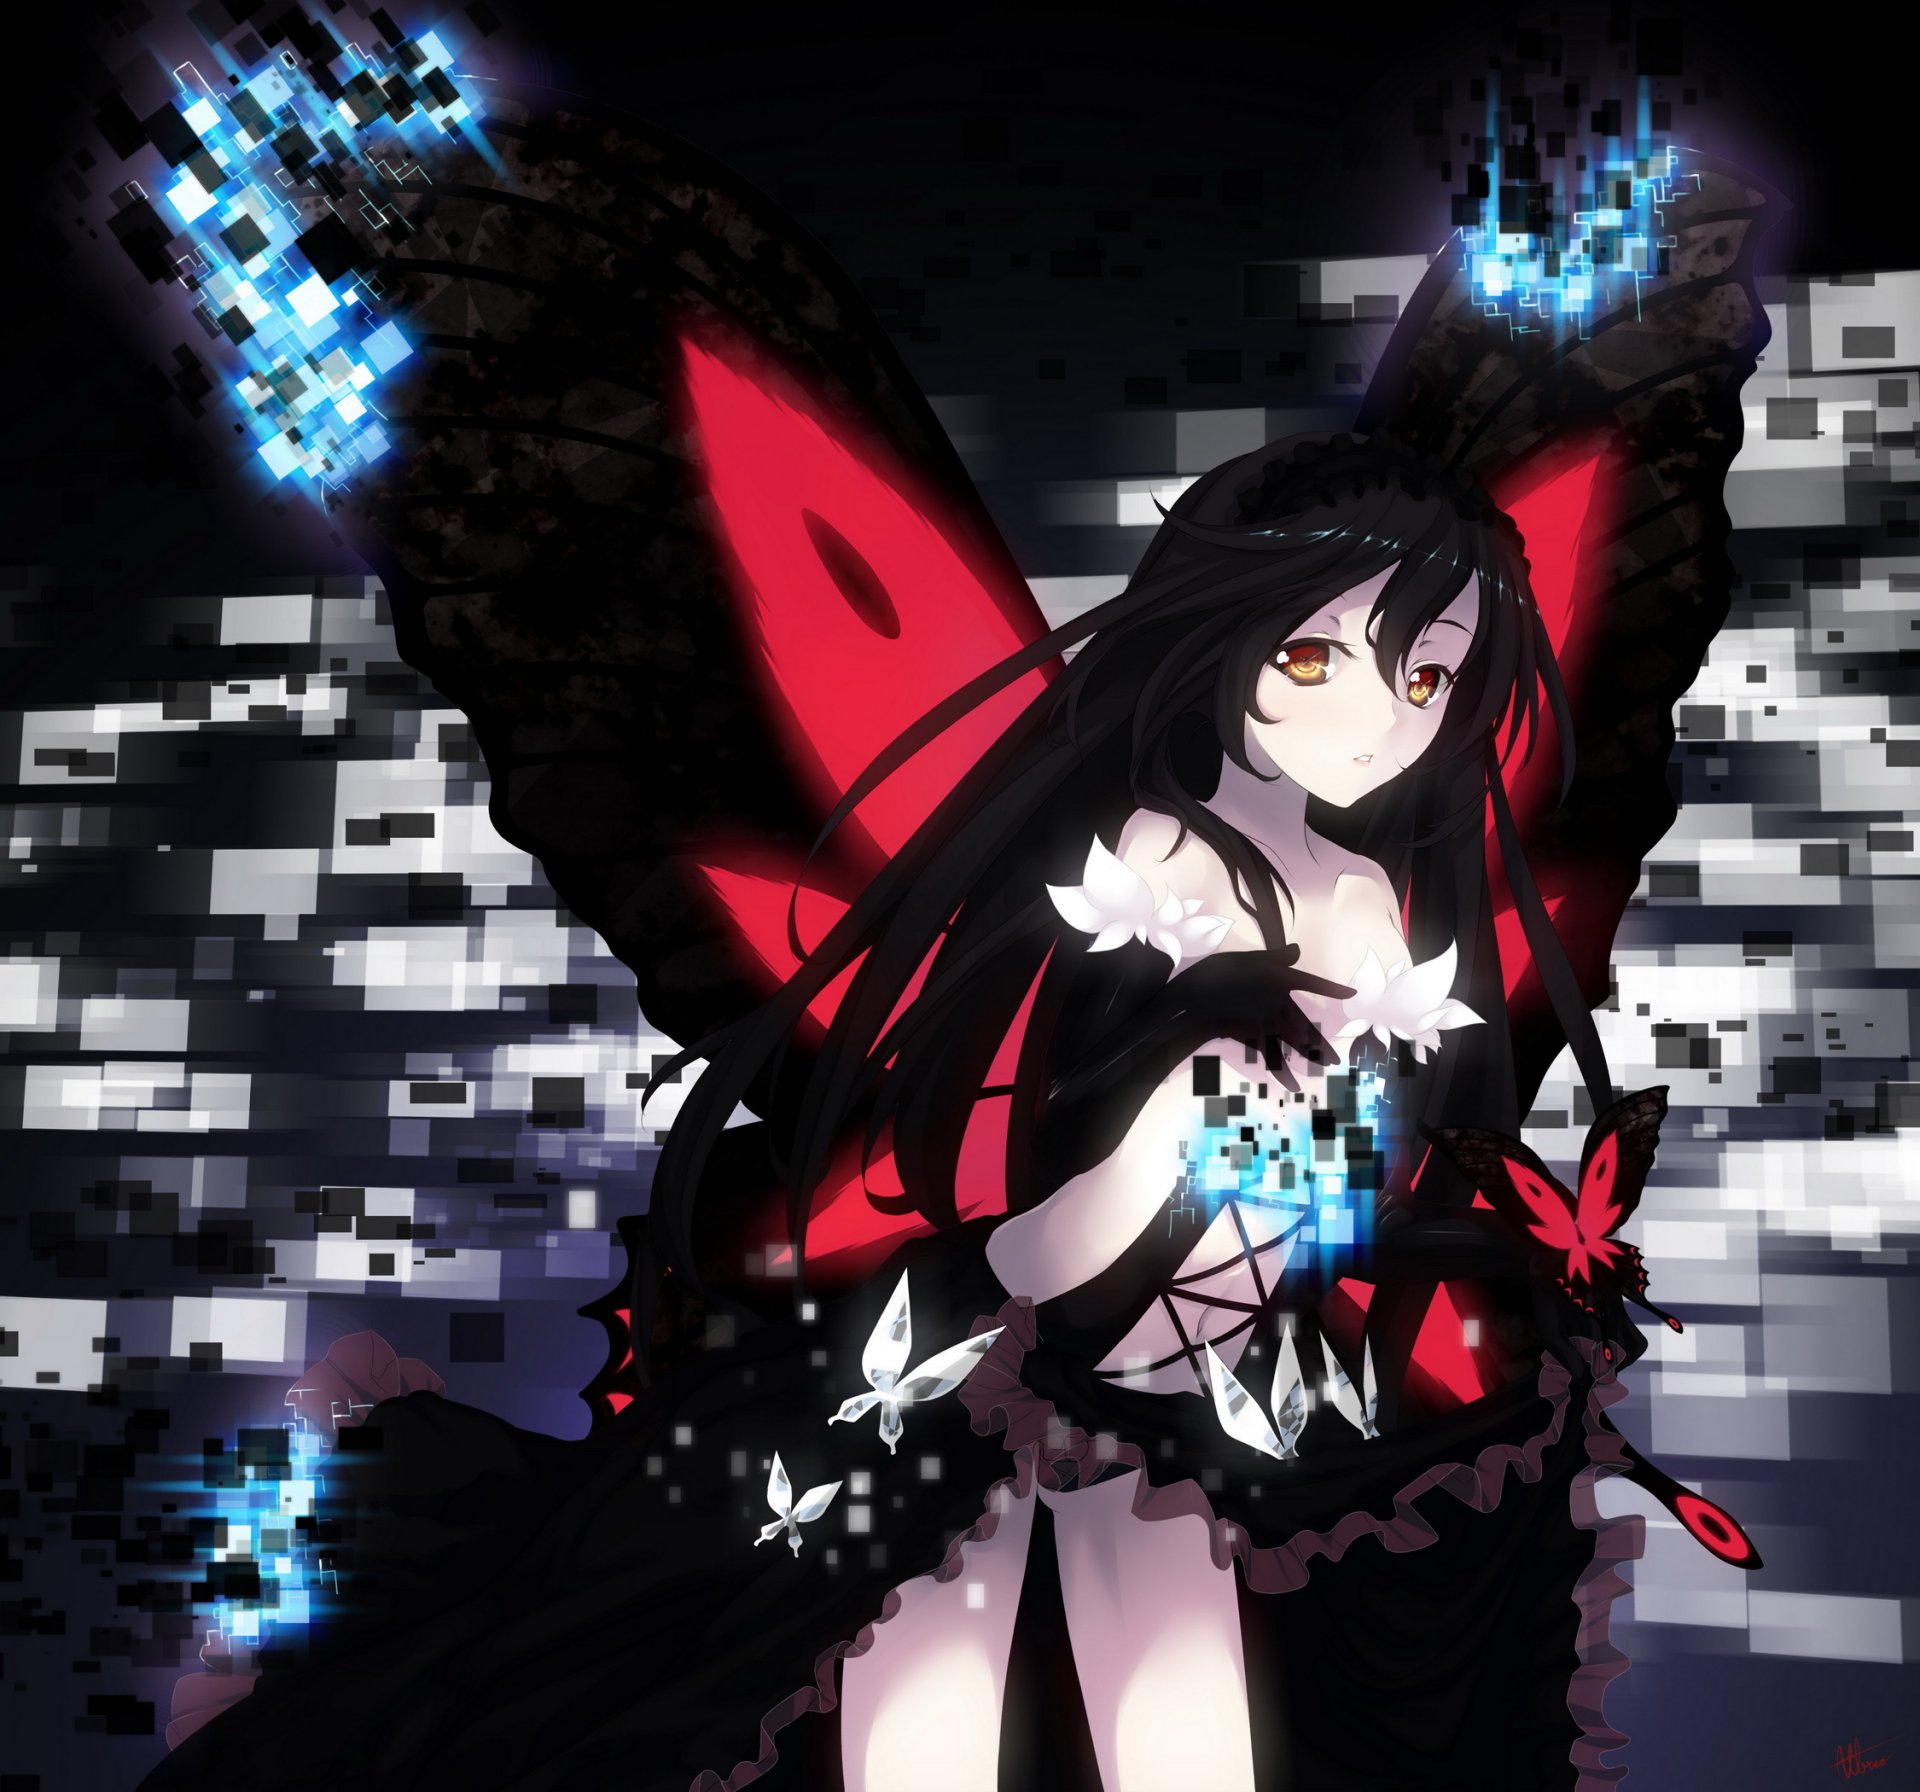 art albreo accel world kuroyukihime girl wings butterfly anime